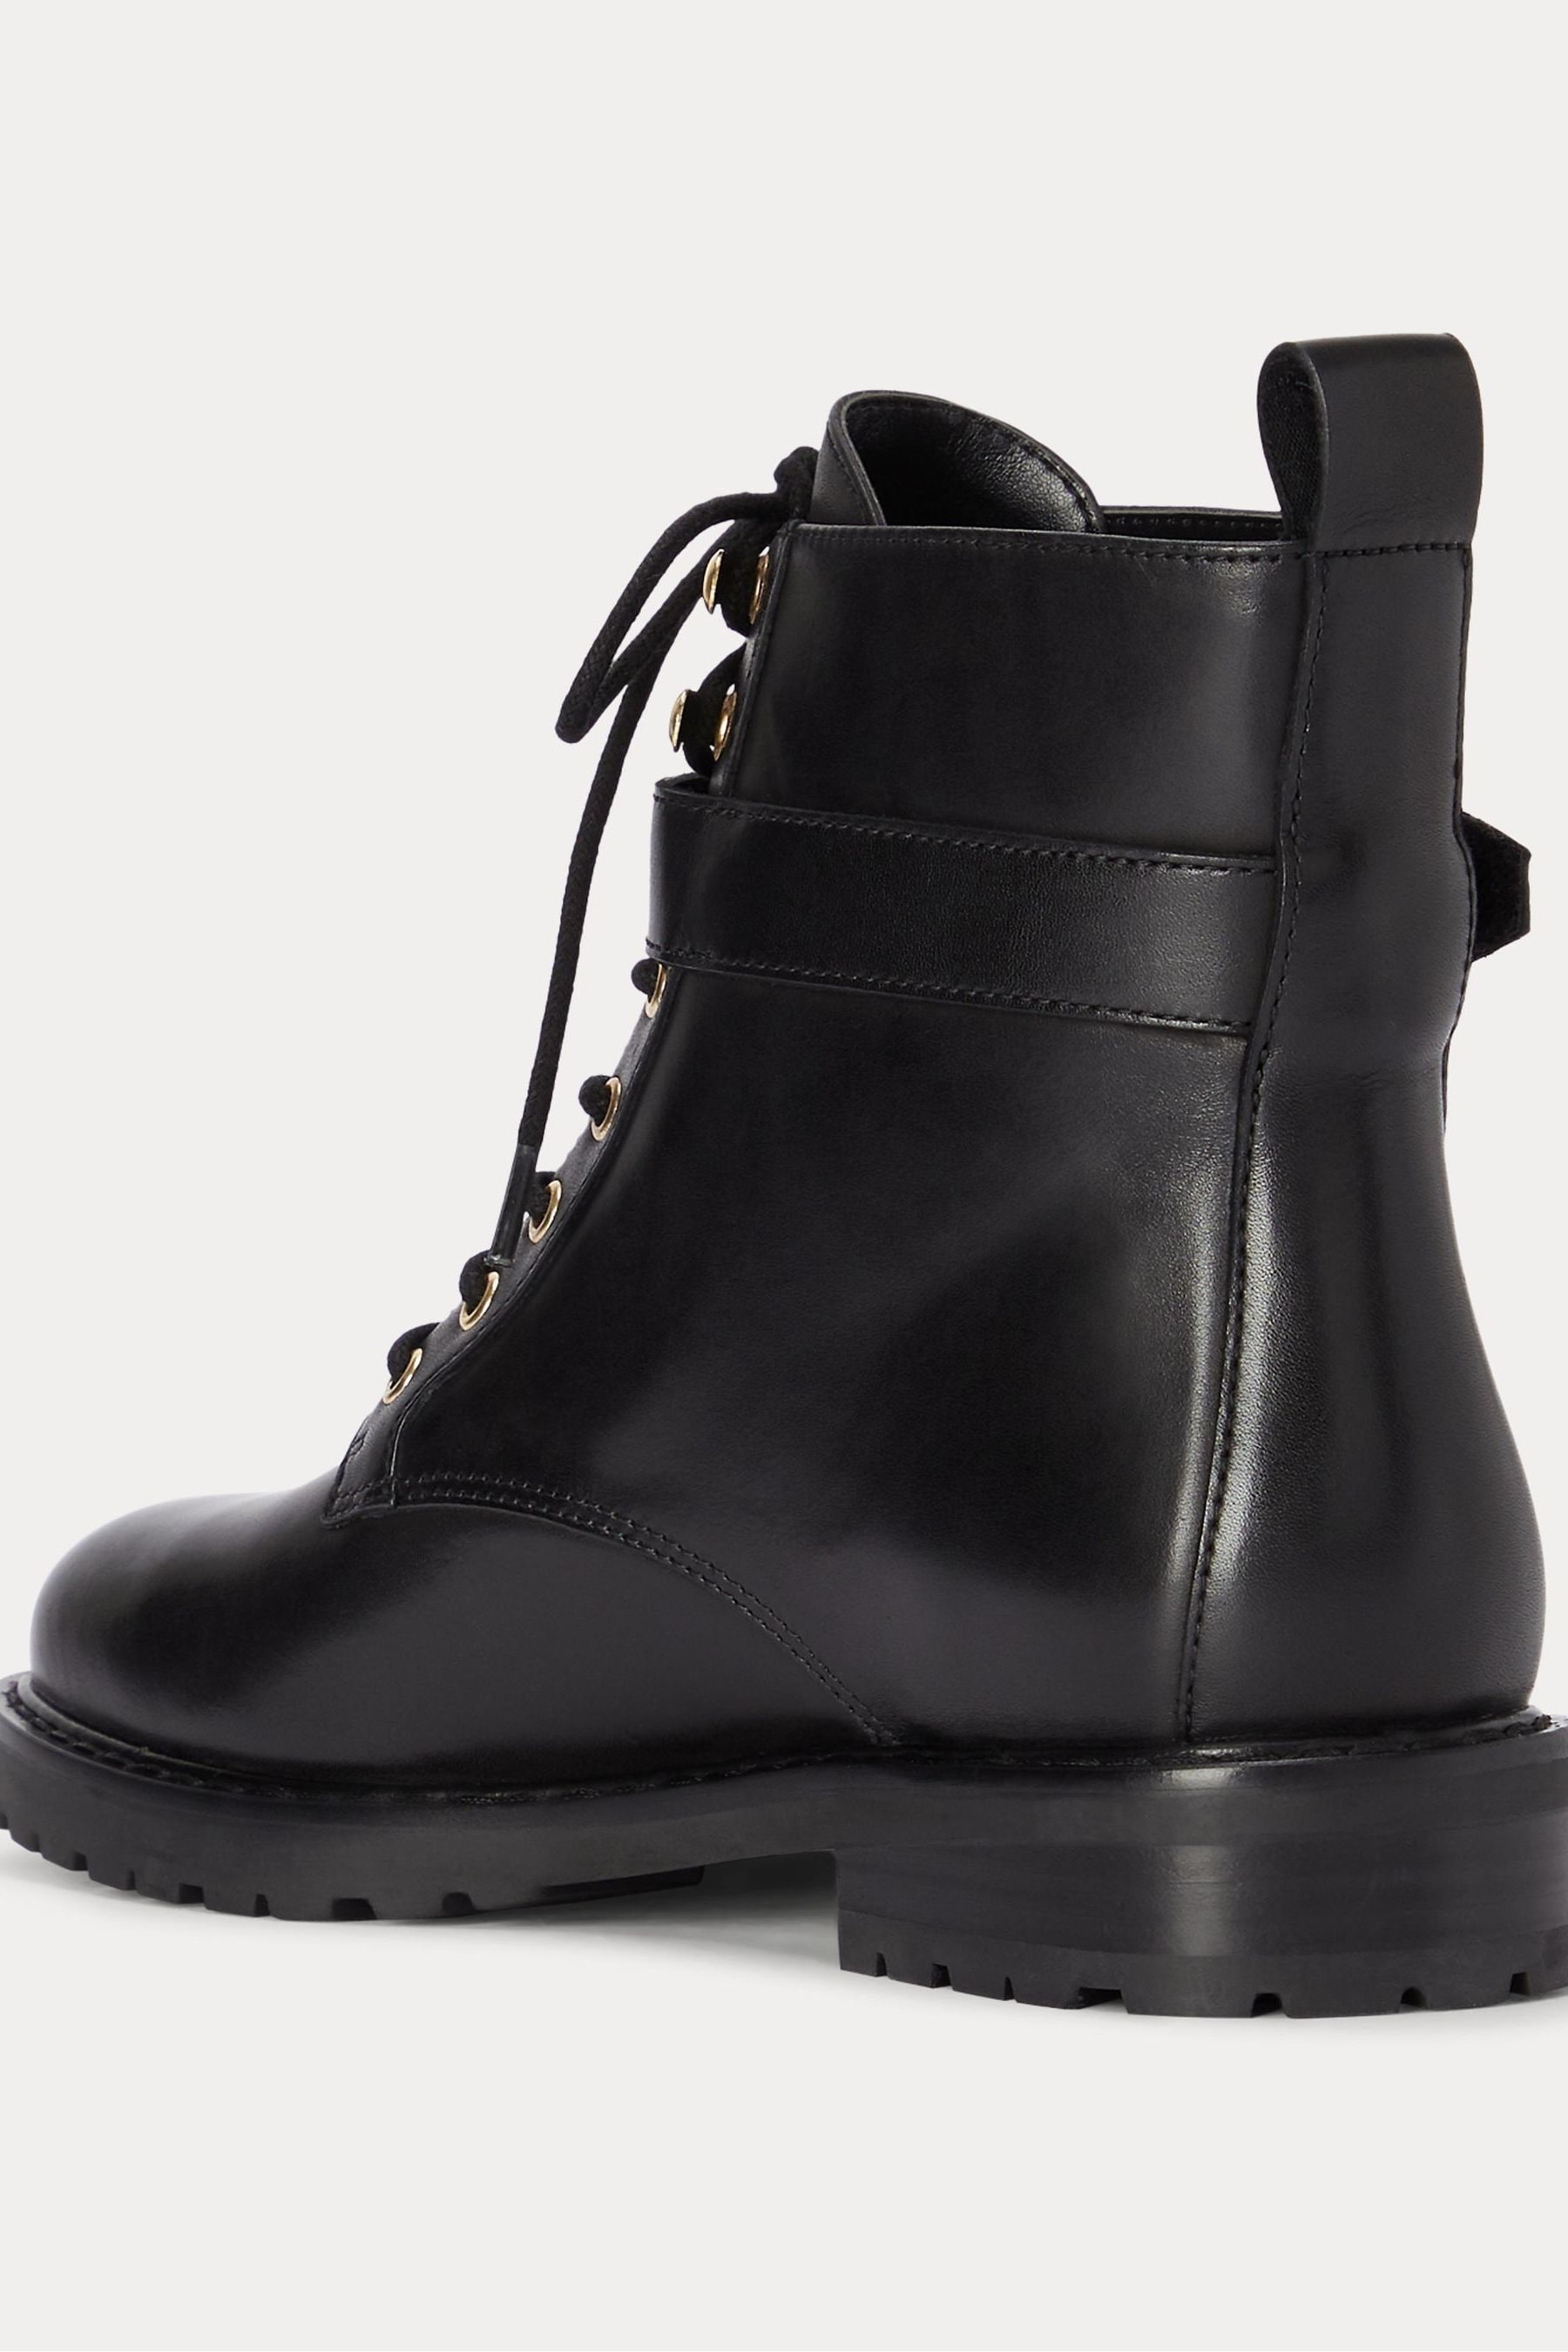 Buy Lauren Ralph Lauren Eldridge Burnished Leather Black Boots from the ...